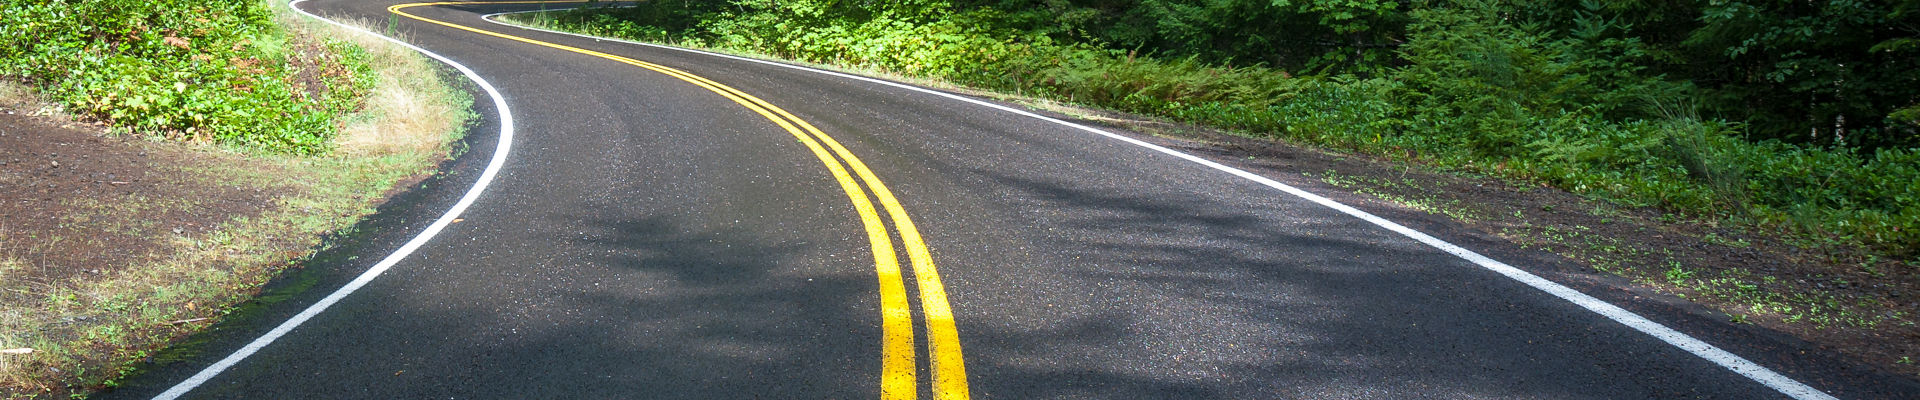 Pavimento de asfalto negro dentado con marcas amarillas en la carretera en medio del bosque de pinos